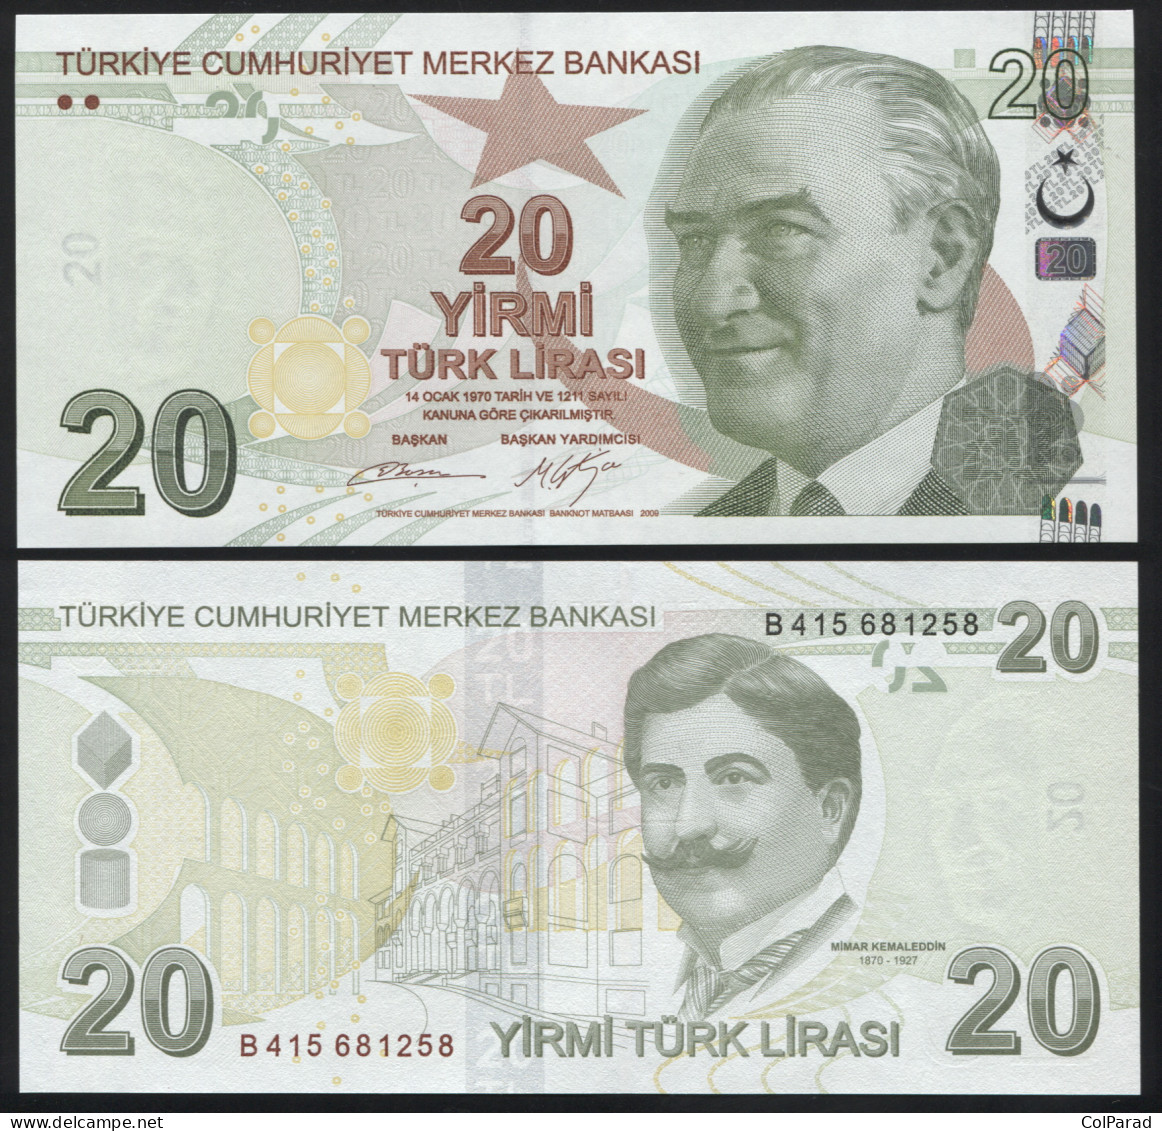 TURKEY 20 TÜRK LIRASI - 2009 (2012) - Paper Unc - P.224b Banknote - Turquia